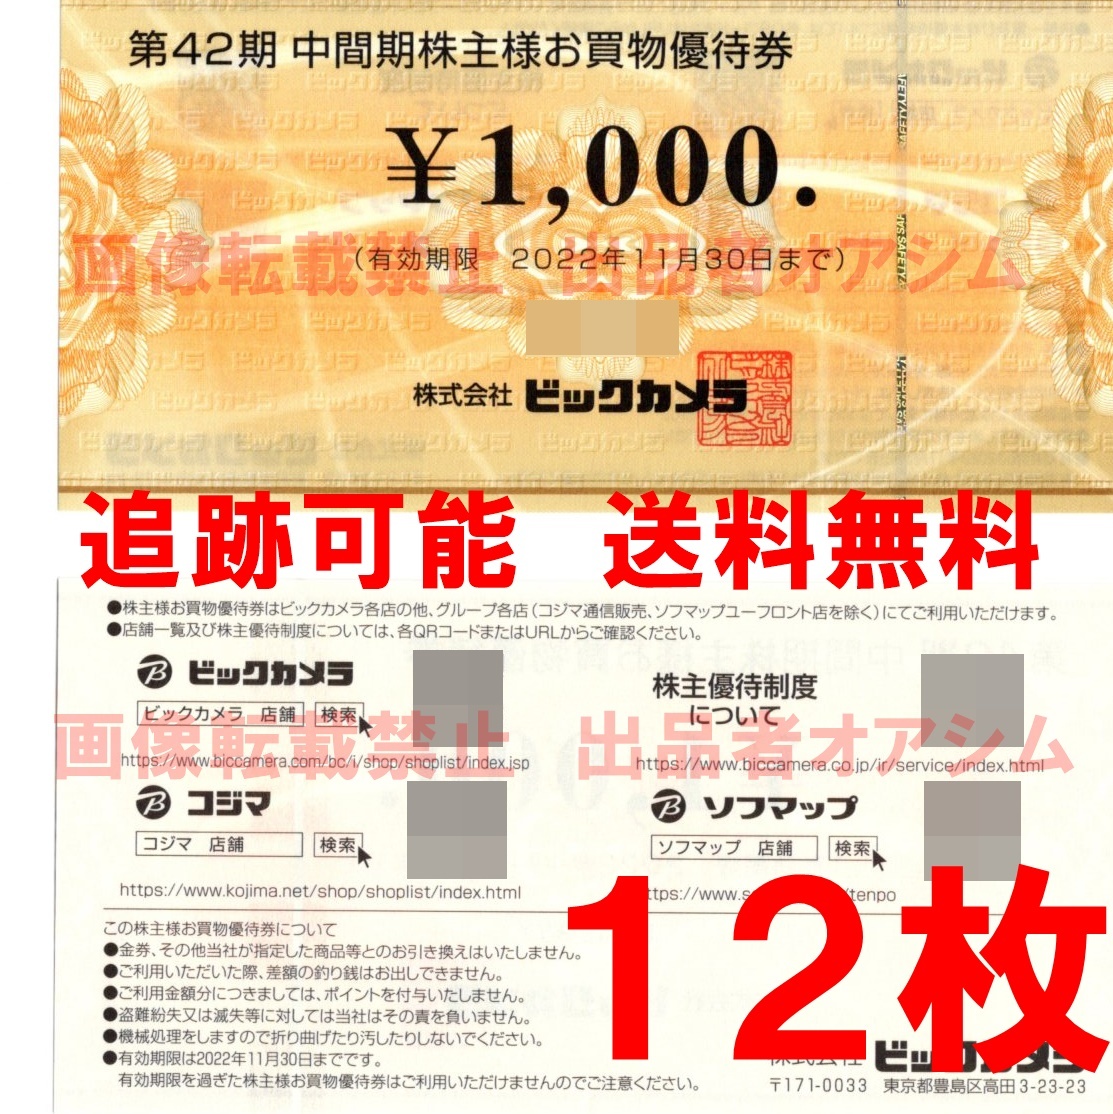 １２０００円分 ビックカメラ株主お買物優待券（１０００円券×１２枚